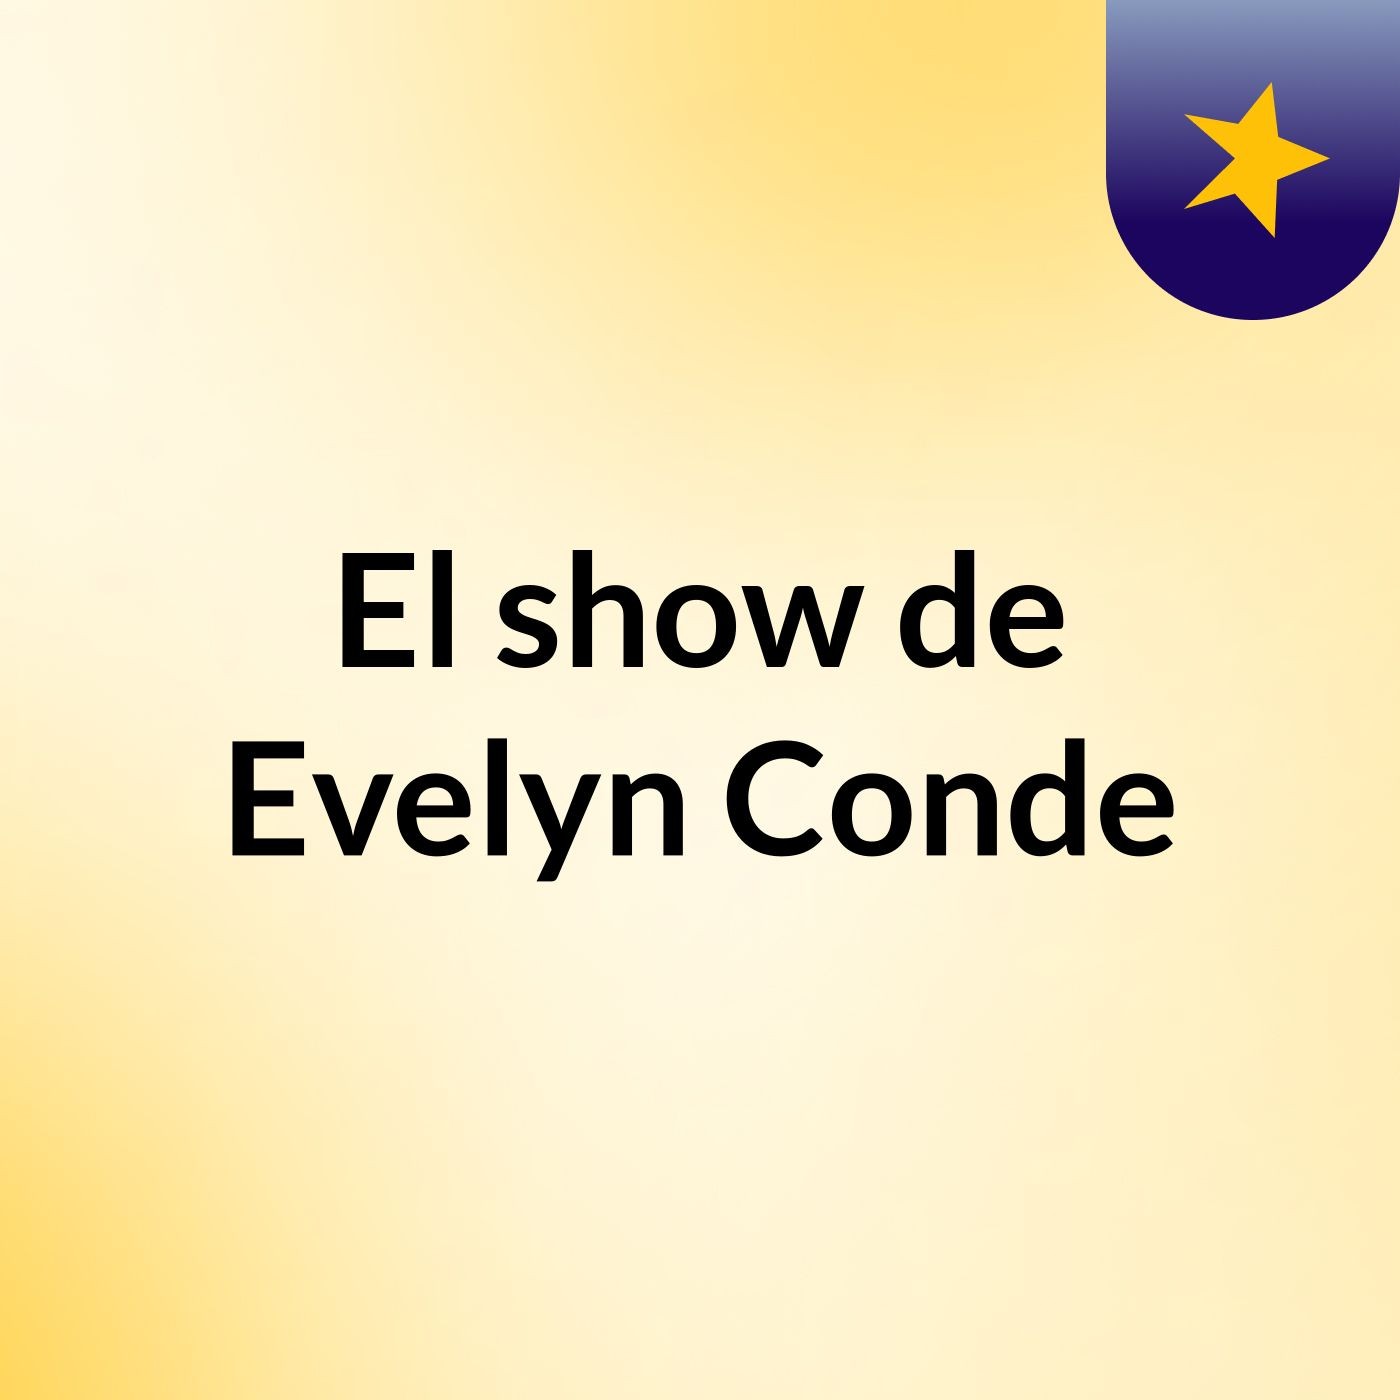 El show de Evelyn Conde